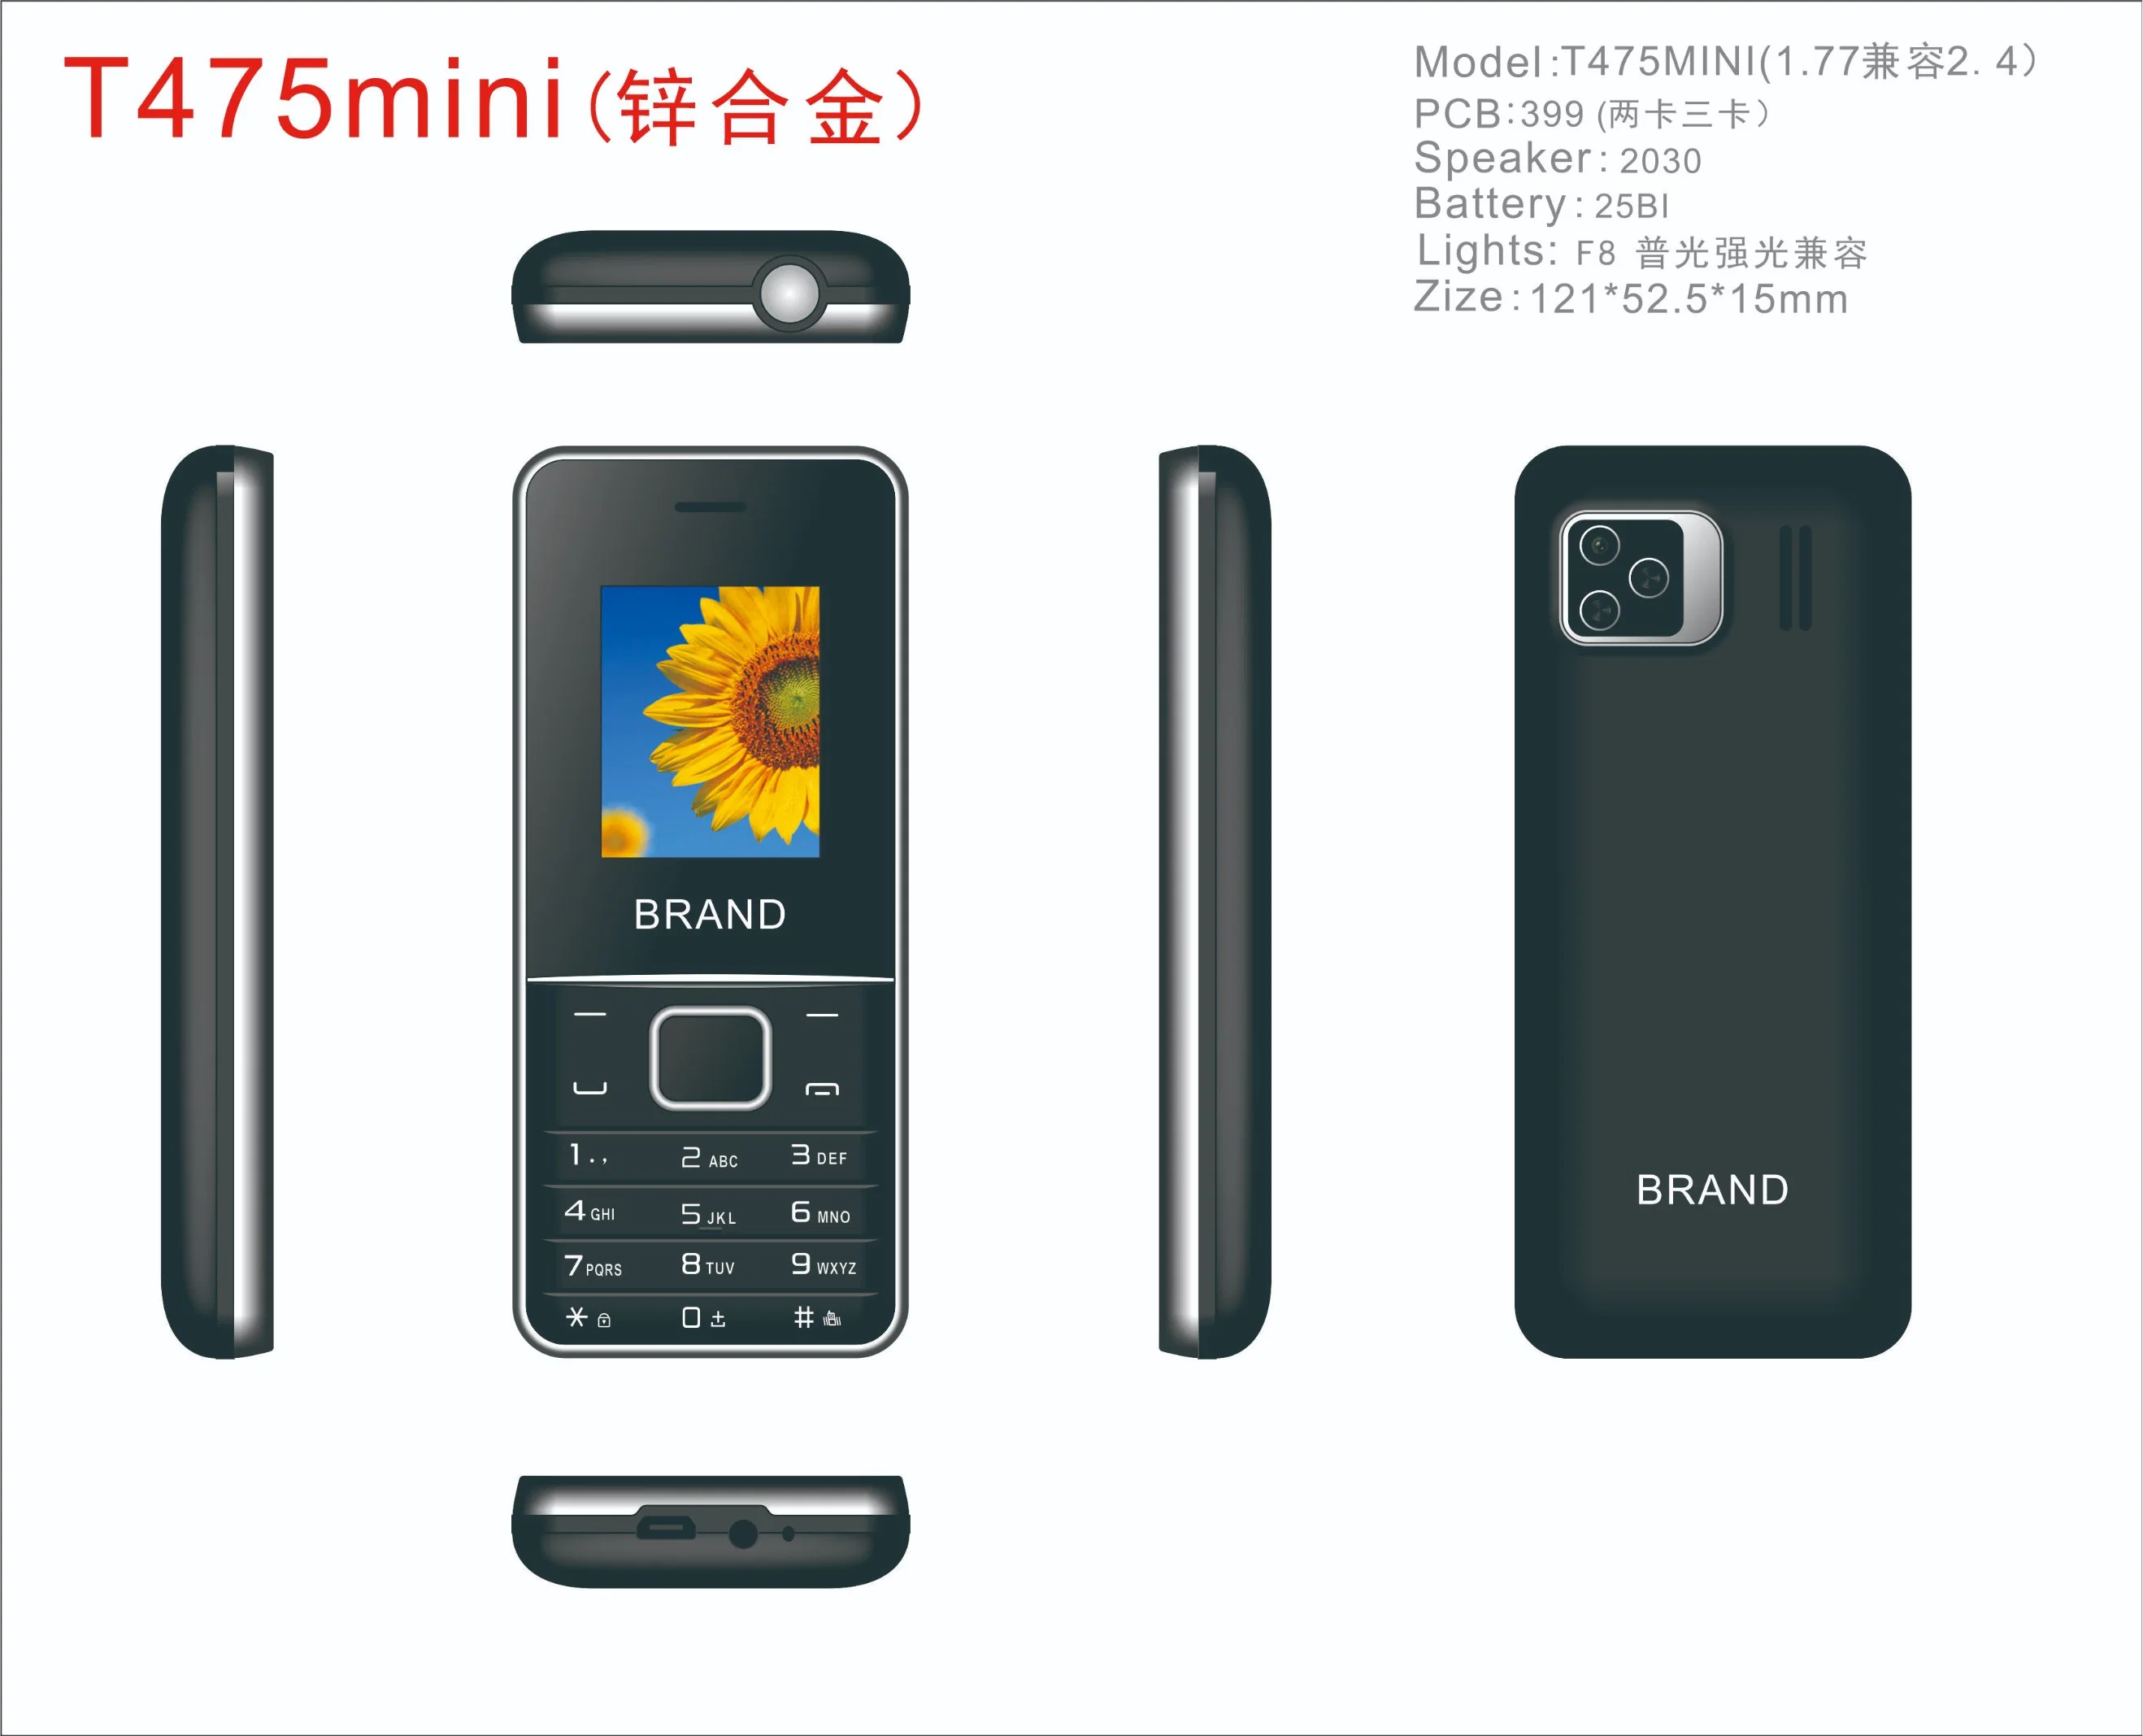 عالية الجودة OEM ODM 1.77 بوصة بار الهواتف الشركة المصنعة الأصلي بطارية كبيرة ، زر كبير ، شاشة كبيرة الحجم ميزة الهاتف